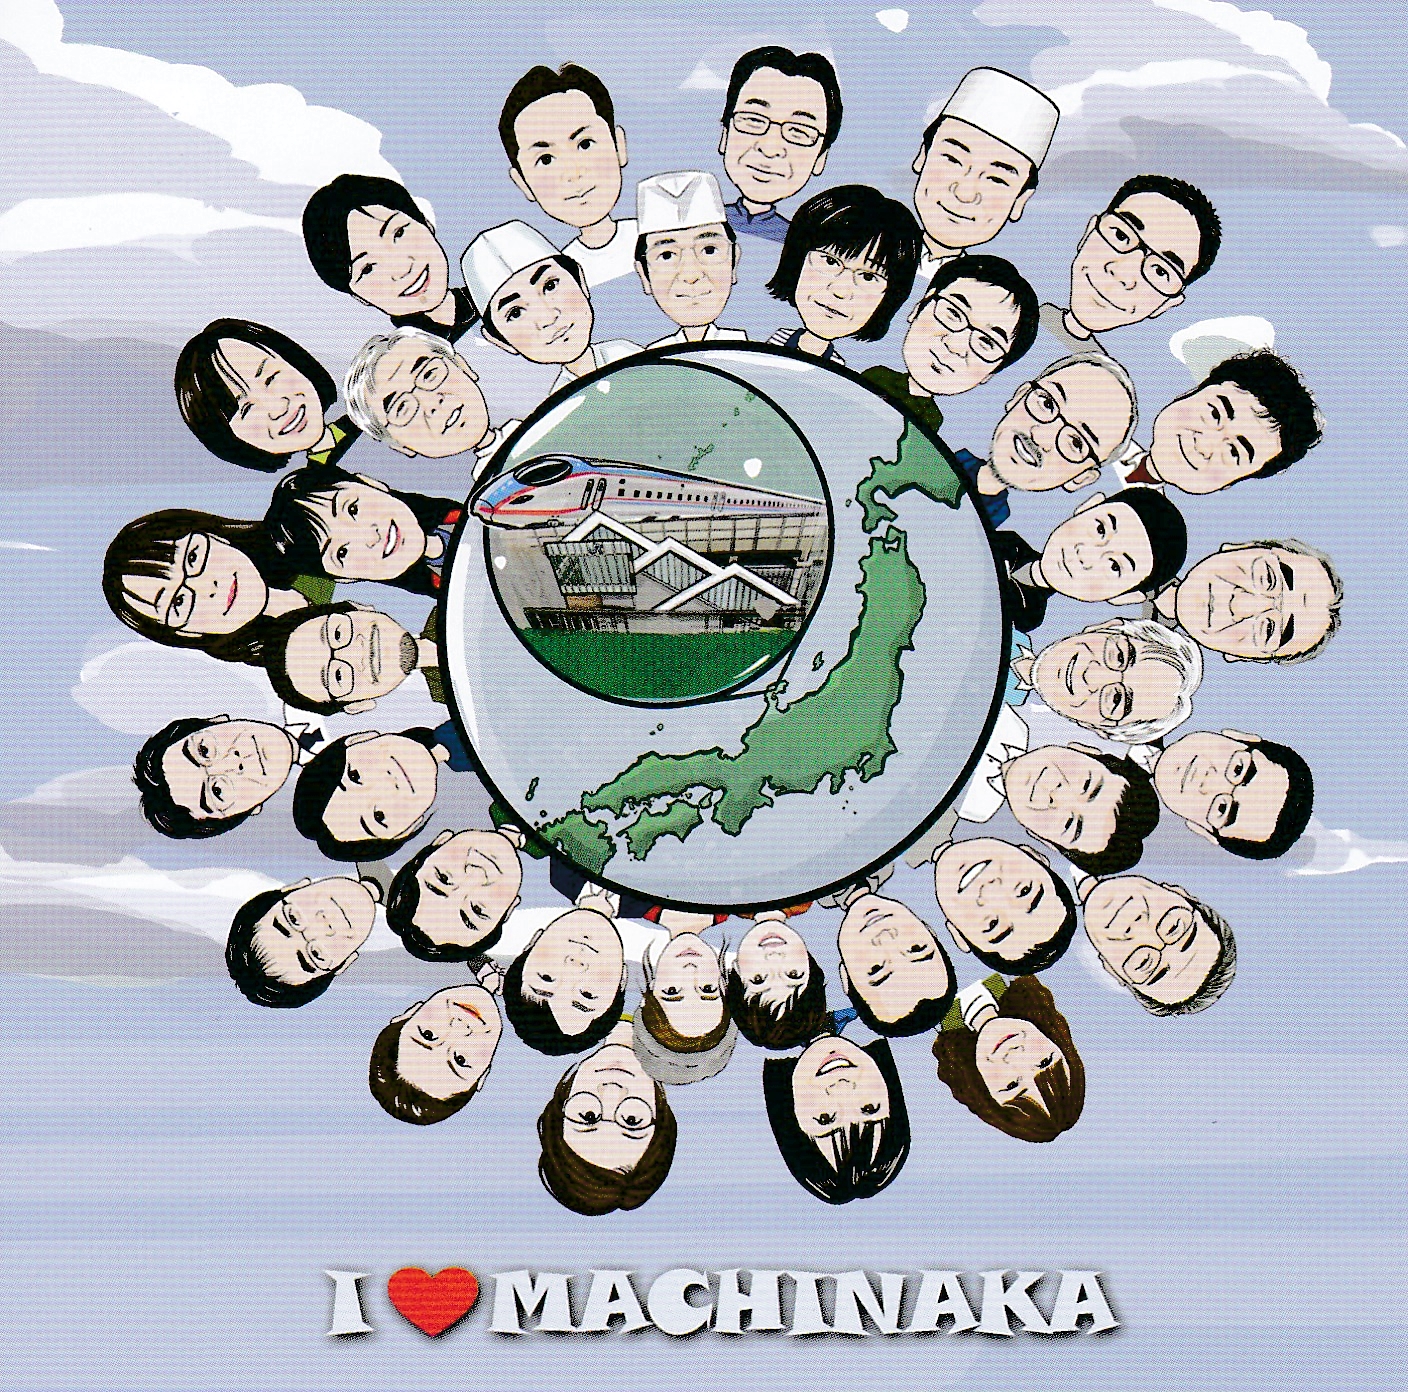 商店街の応援ソング”I LOVE MACHINAKA”公開!!アイキャッチ